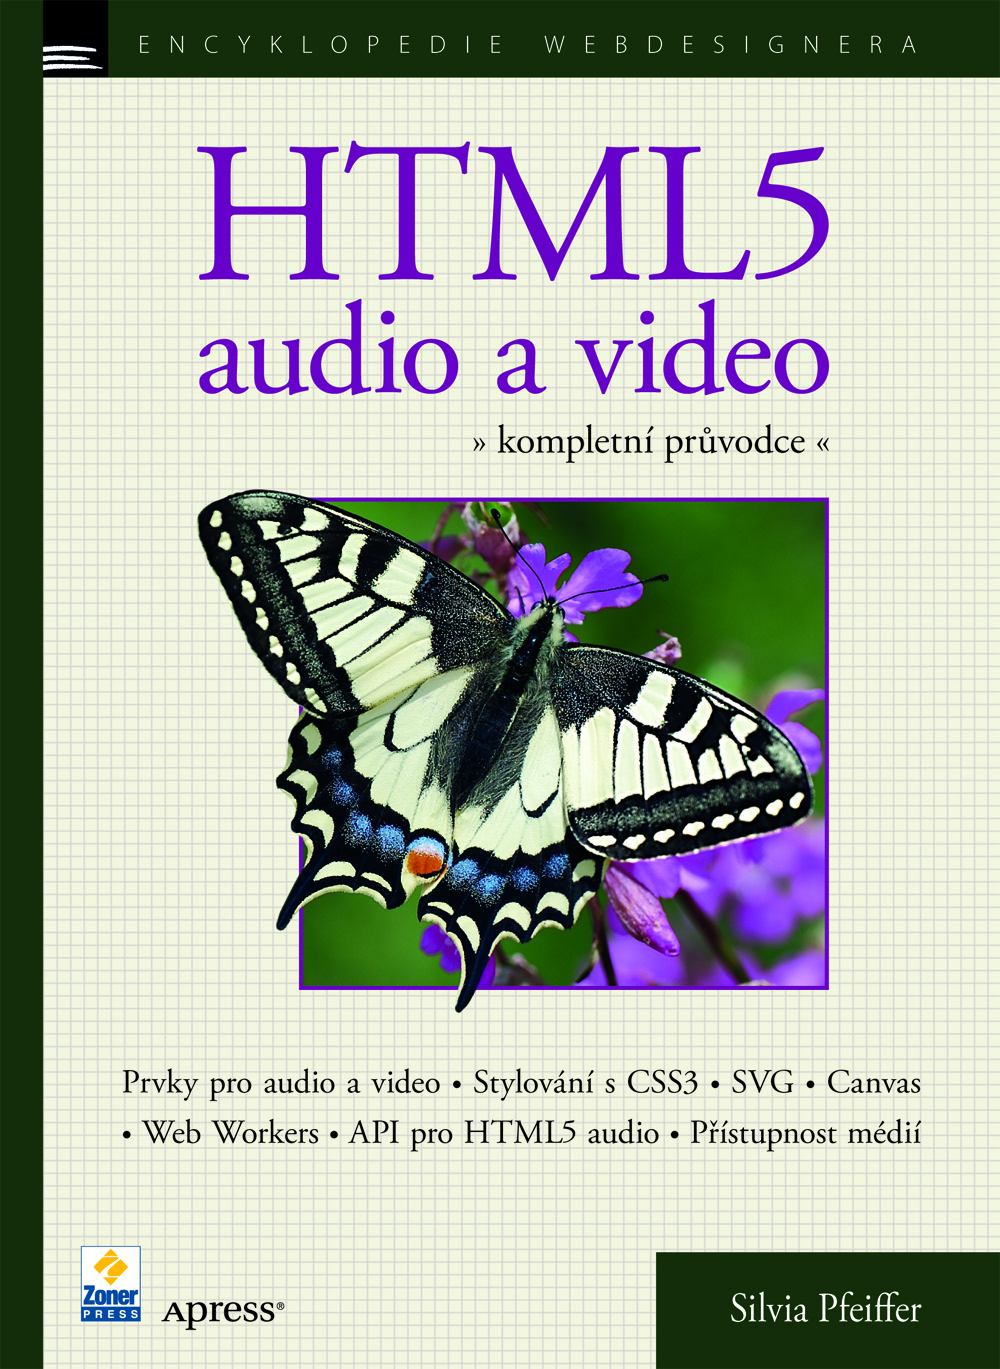 Silvia Pfeiffer – HTML5 - audio a video, kompletní průvodce